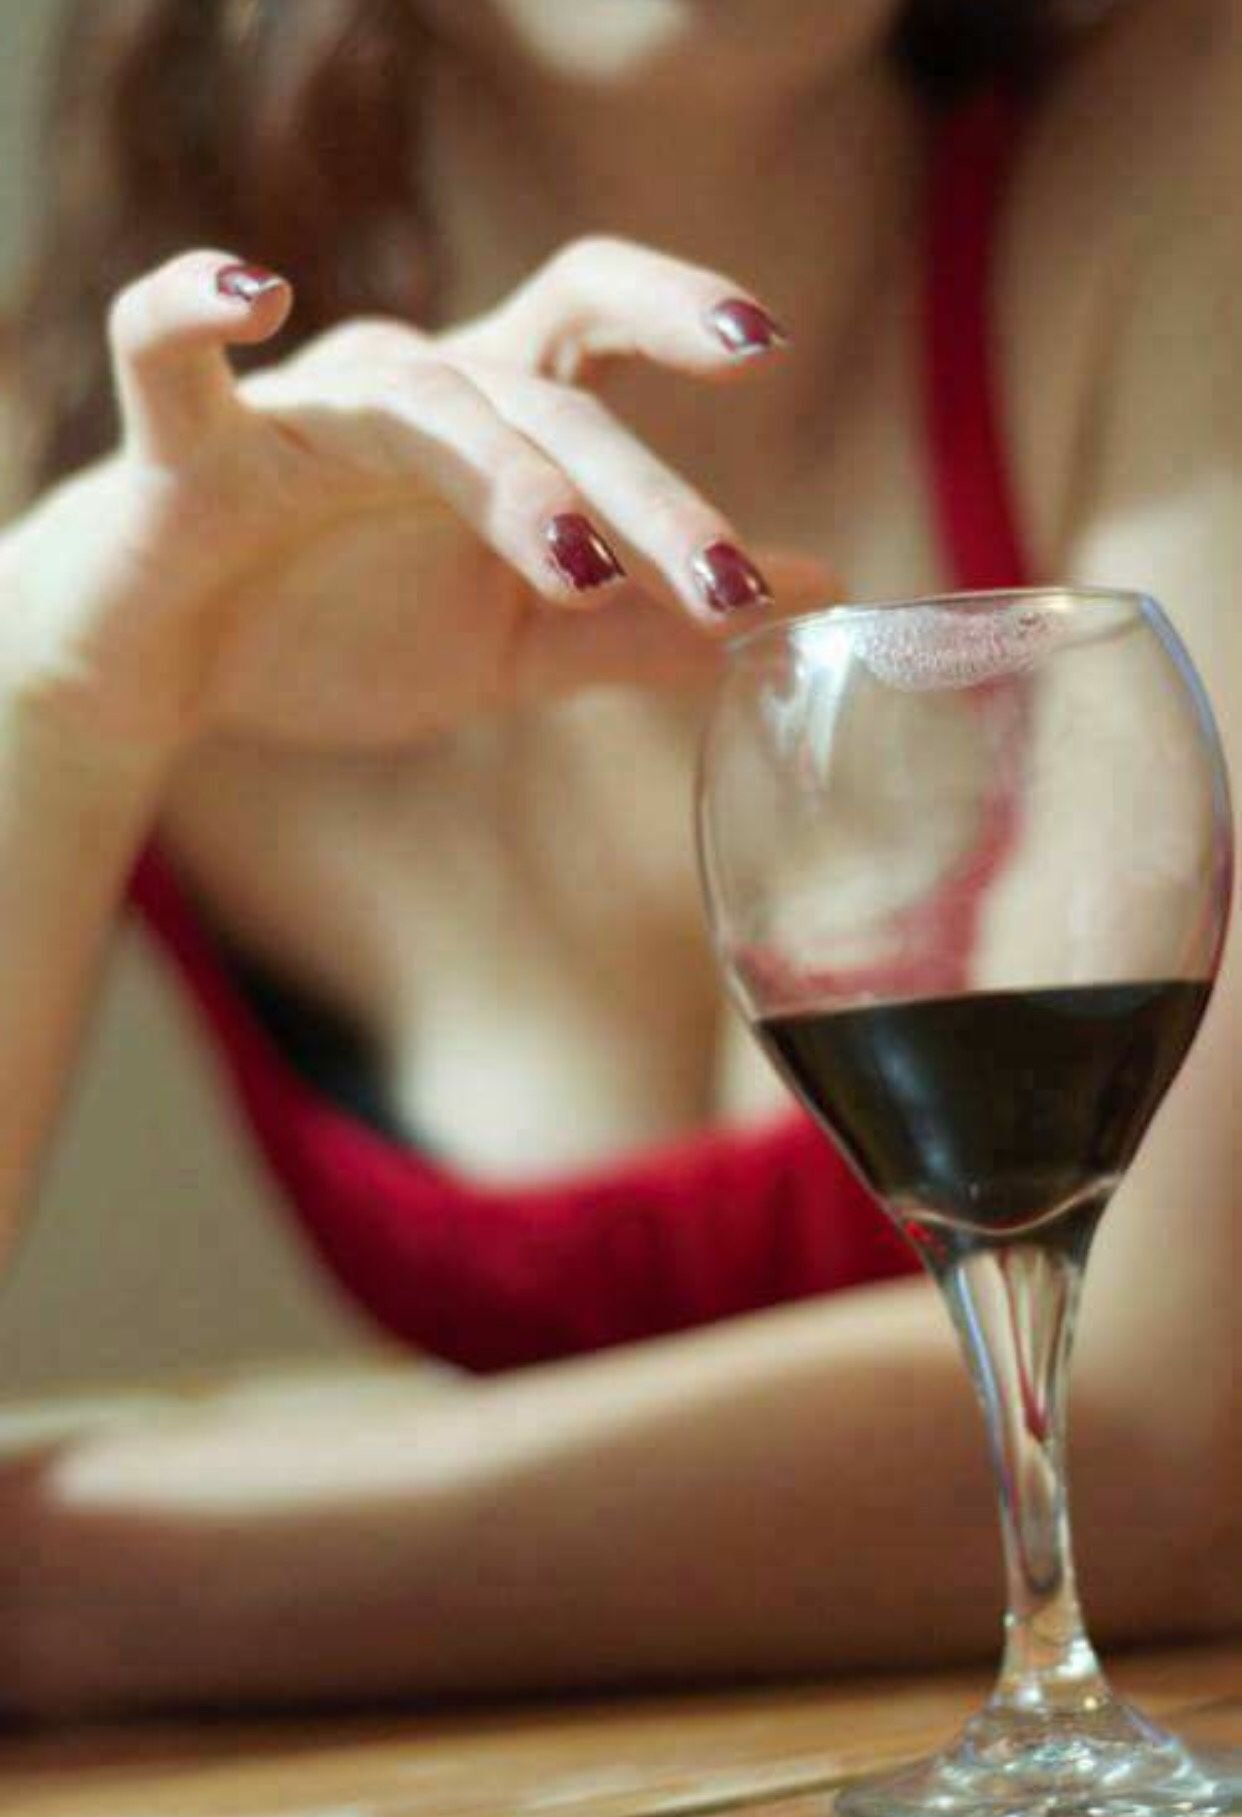 Фото девушка с бокалом вина в руках